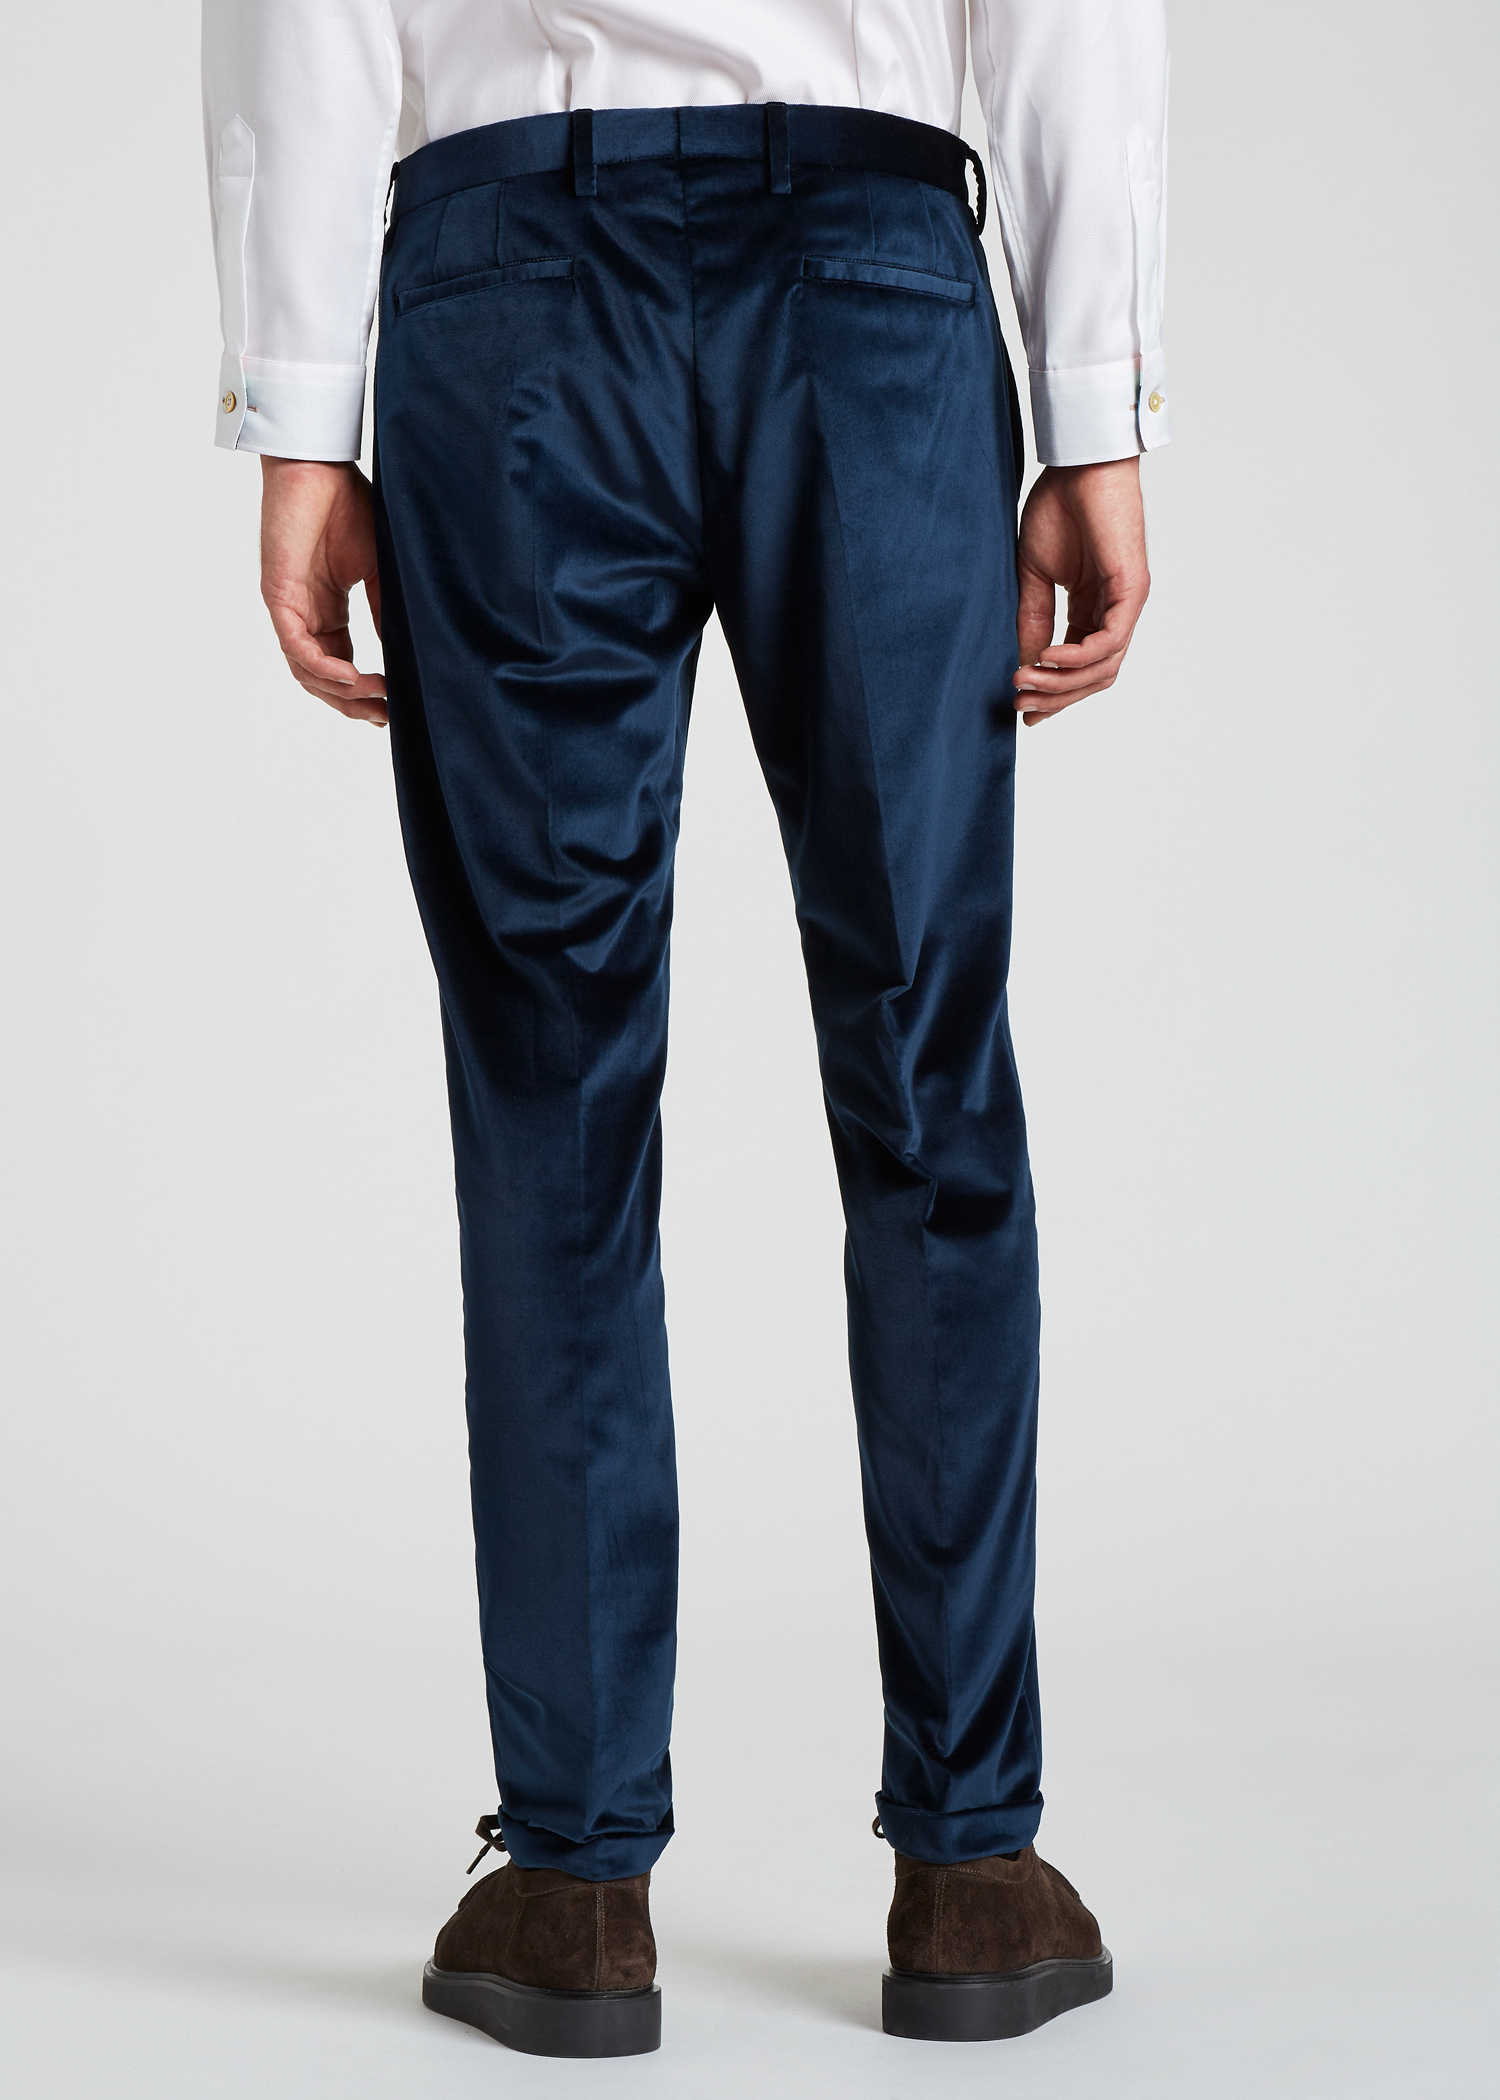 Model back view - Men's Slim-Fit Navy Cotton Velvet Trousers Paul Smith